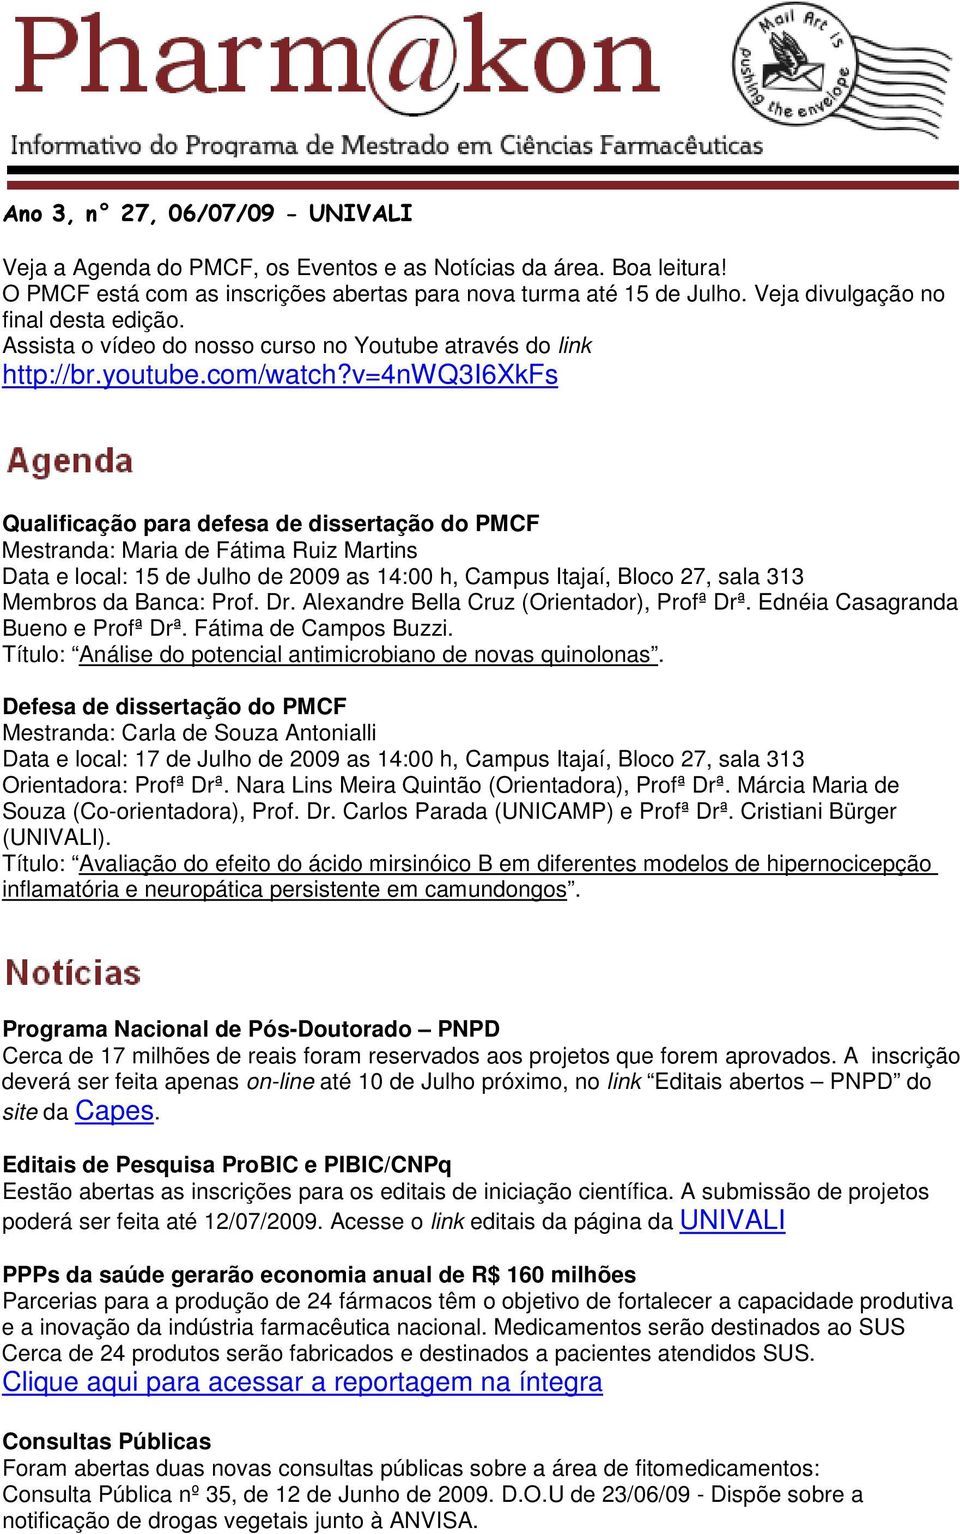 v=4nwq3i6xkfs Qualificação para defesa de dissertação do PMCF Mestranda: Maria de Fátima Ruiz Martins Data e local: 15 de Julho de 2009 as 14:00 h, Campus Itajaí, Bloco 27, sala 313 Membros da Banca: